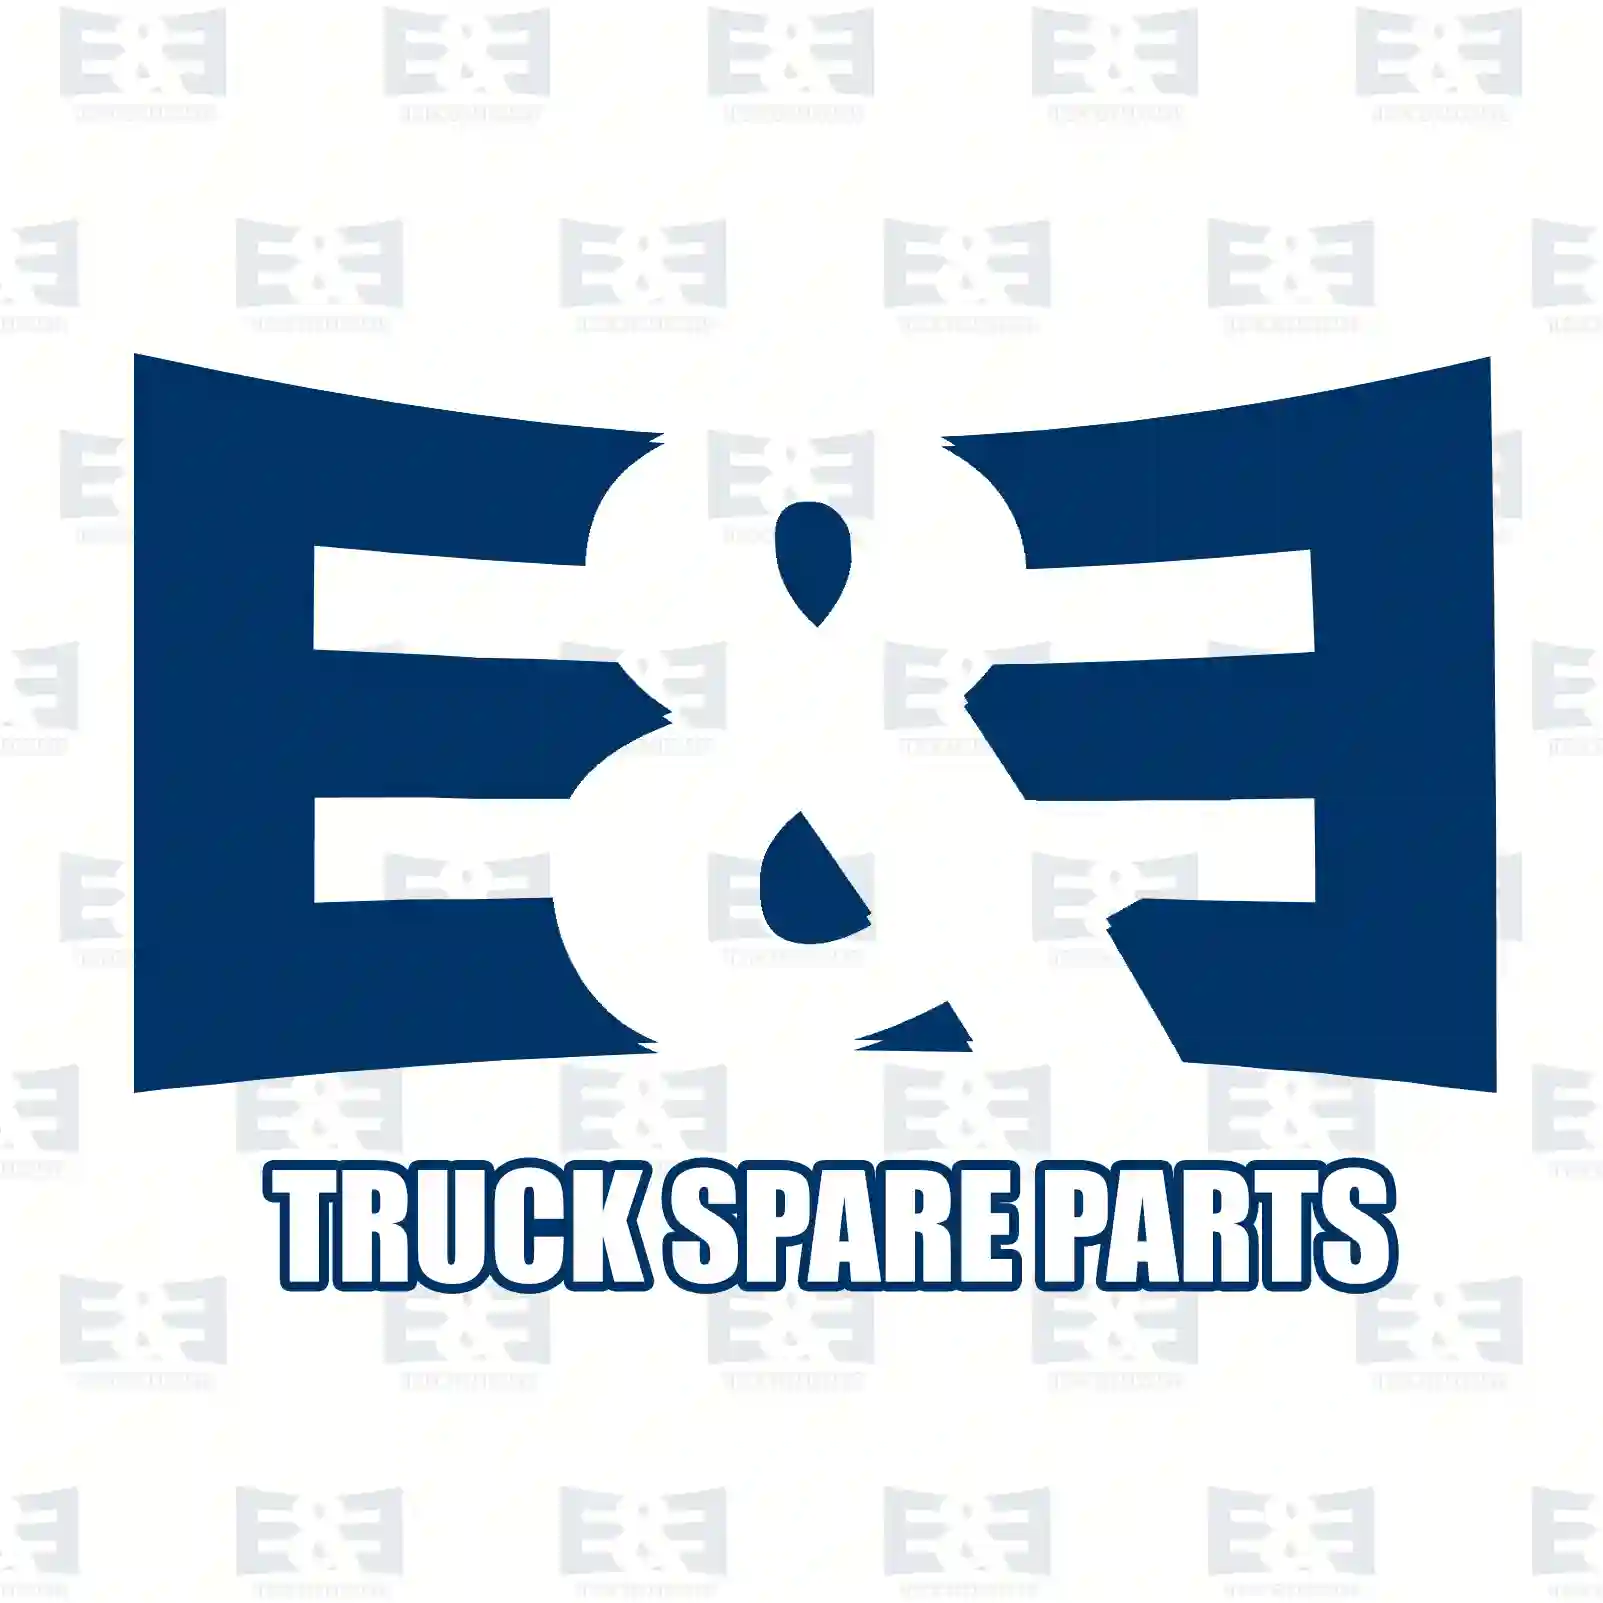 Drive shaft, 2E2279235, 1522358, 1524333, 1524667, 383758 ||  2E2279235 E&E Truck Spare Parts | Truck Spare Parts, Auotomotive Spare Parts Drive shaft, 2E2279235, 1522358, 1524333, 1524667, 383758 ||  2E2279235 E&E Truck Spare Parts | Truck Spare Parts, Auotomotive Spare Parts